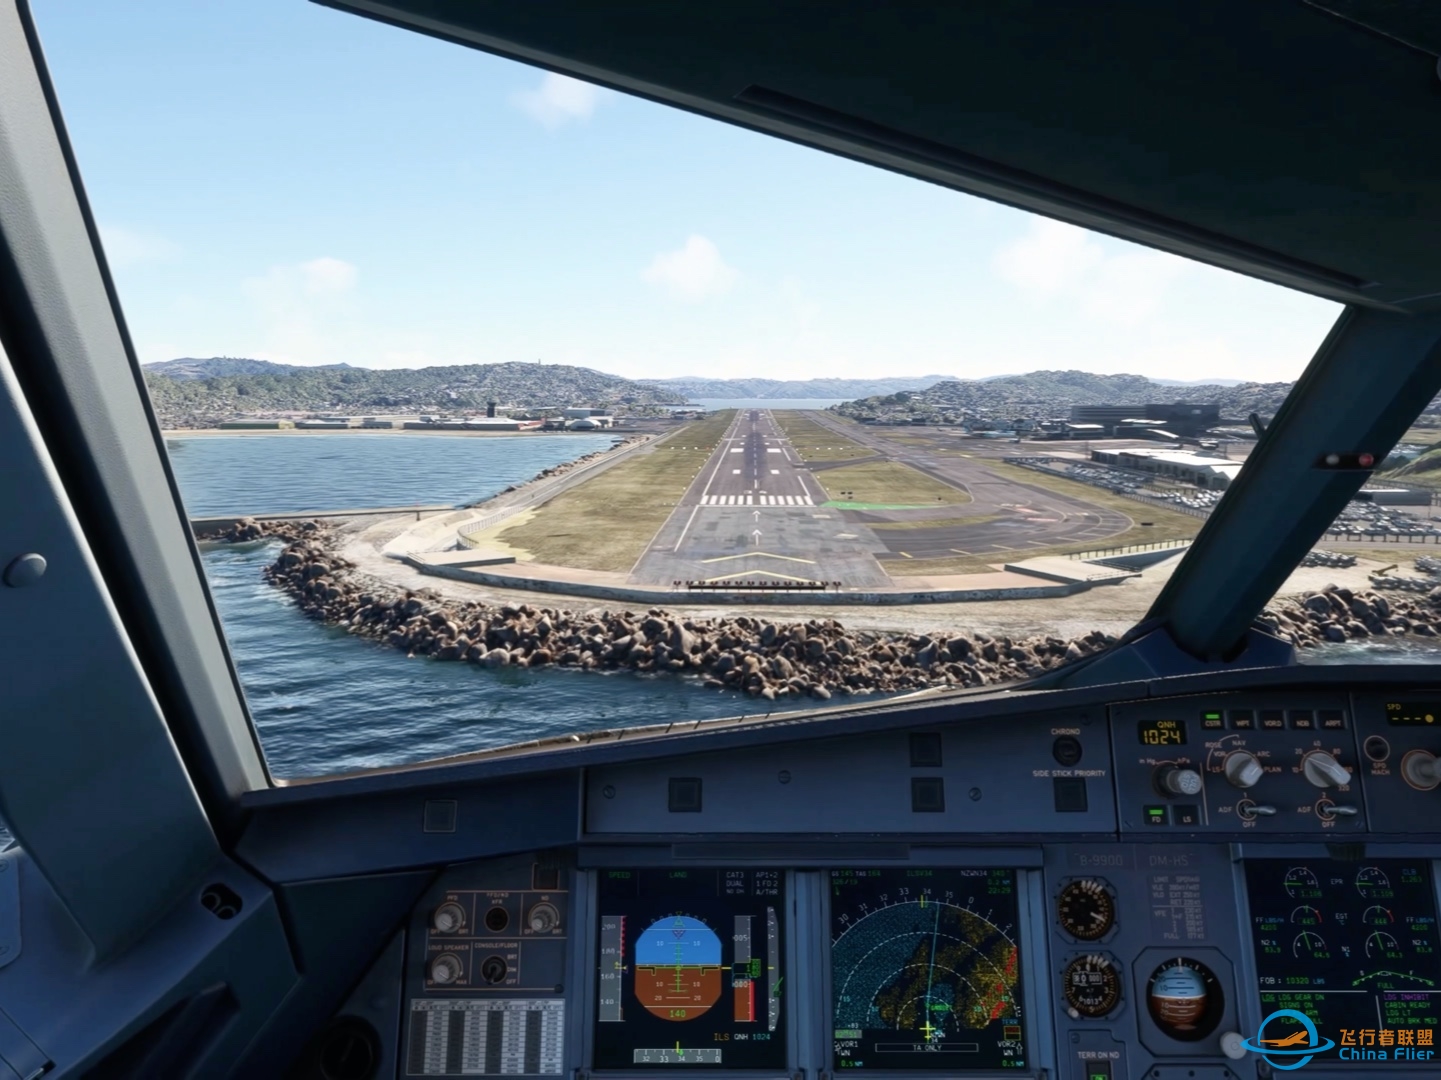 降落微软飞行模拟2020最喜欢的机场新西兰惠灵顿机场-3503 